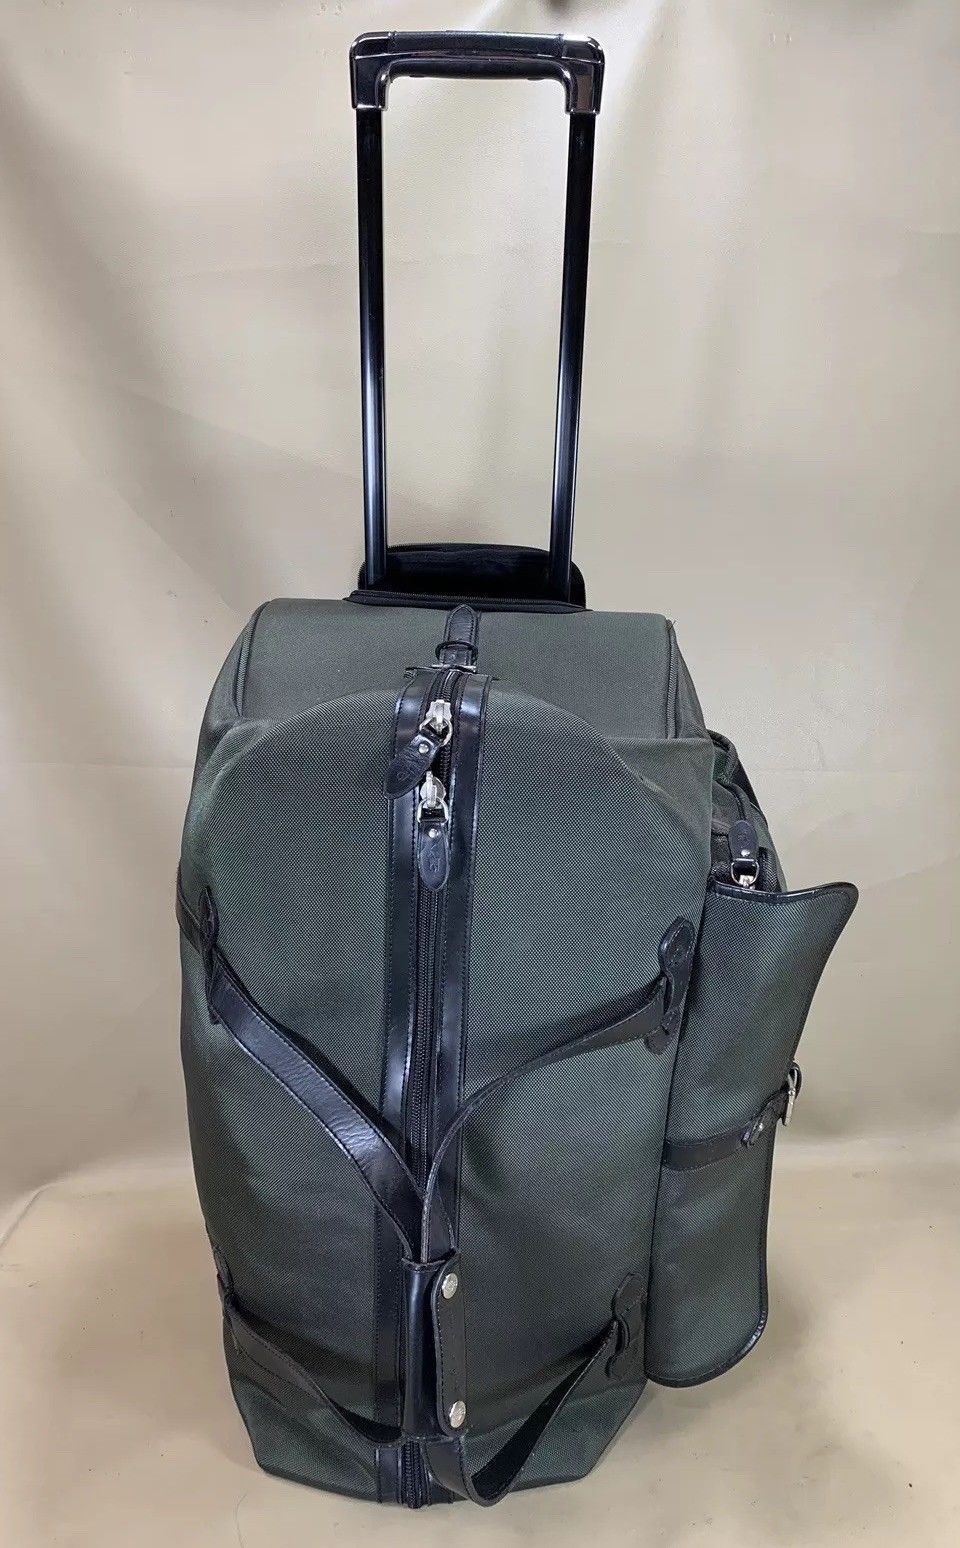 ralph lauren travel bag with wheels